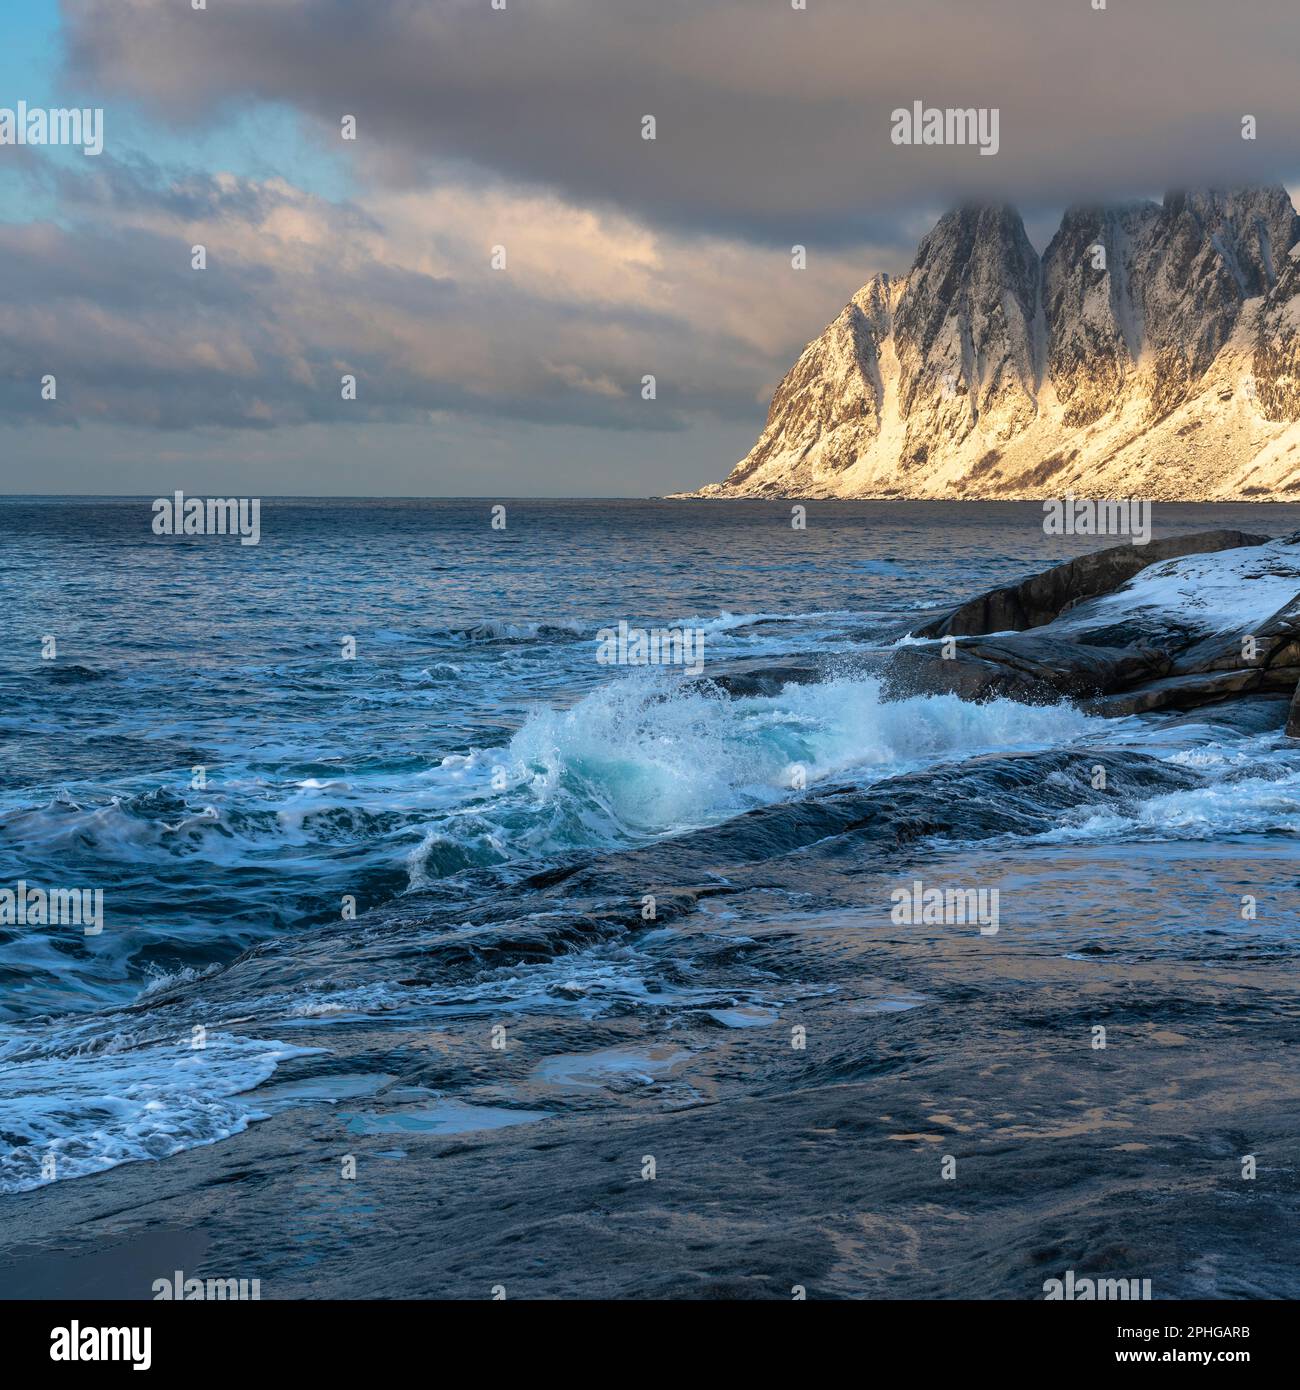 Am Fels sich brechende Wellen des Atlantik bei Tungeneset, Senja, Norwegen, mit den steilen Bergen Okshornan im Hintergrund. Stürmisches Winterwetter Stockfoto